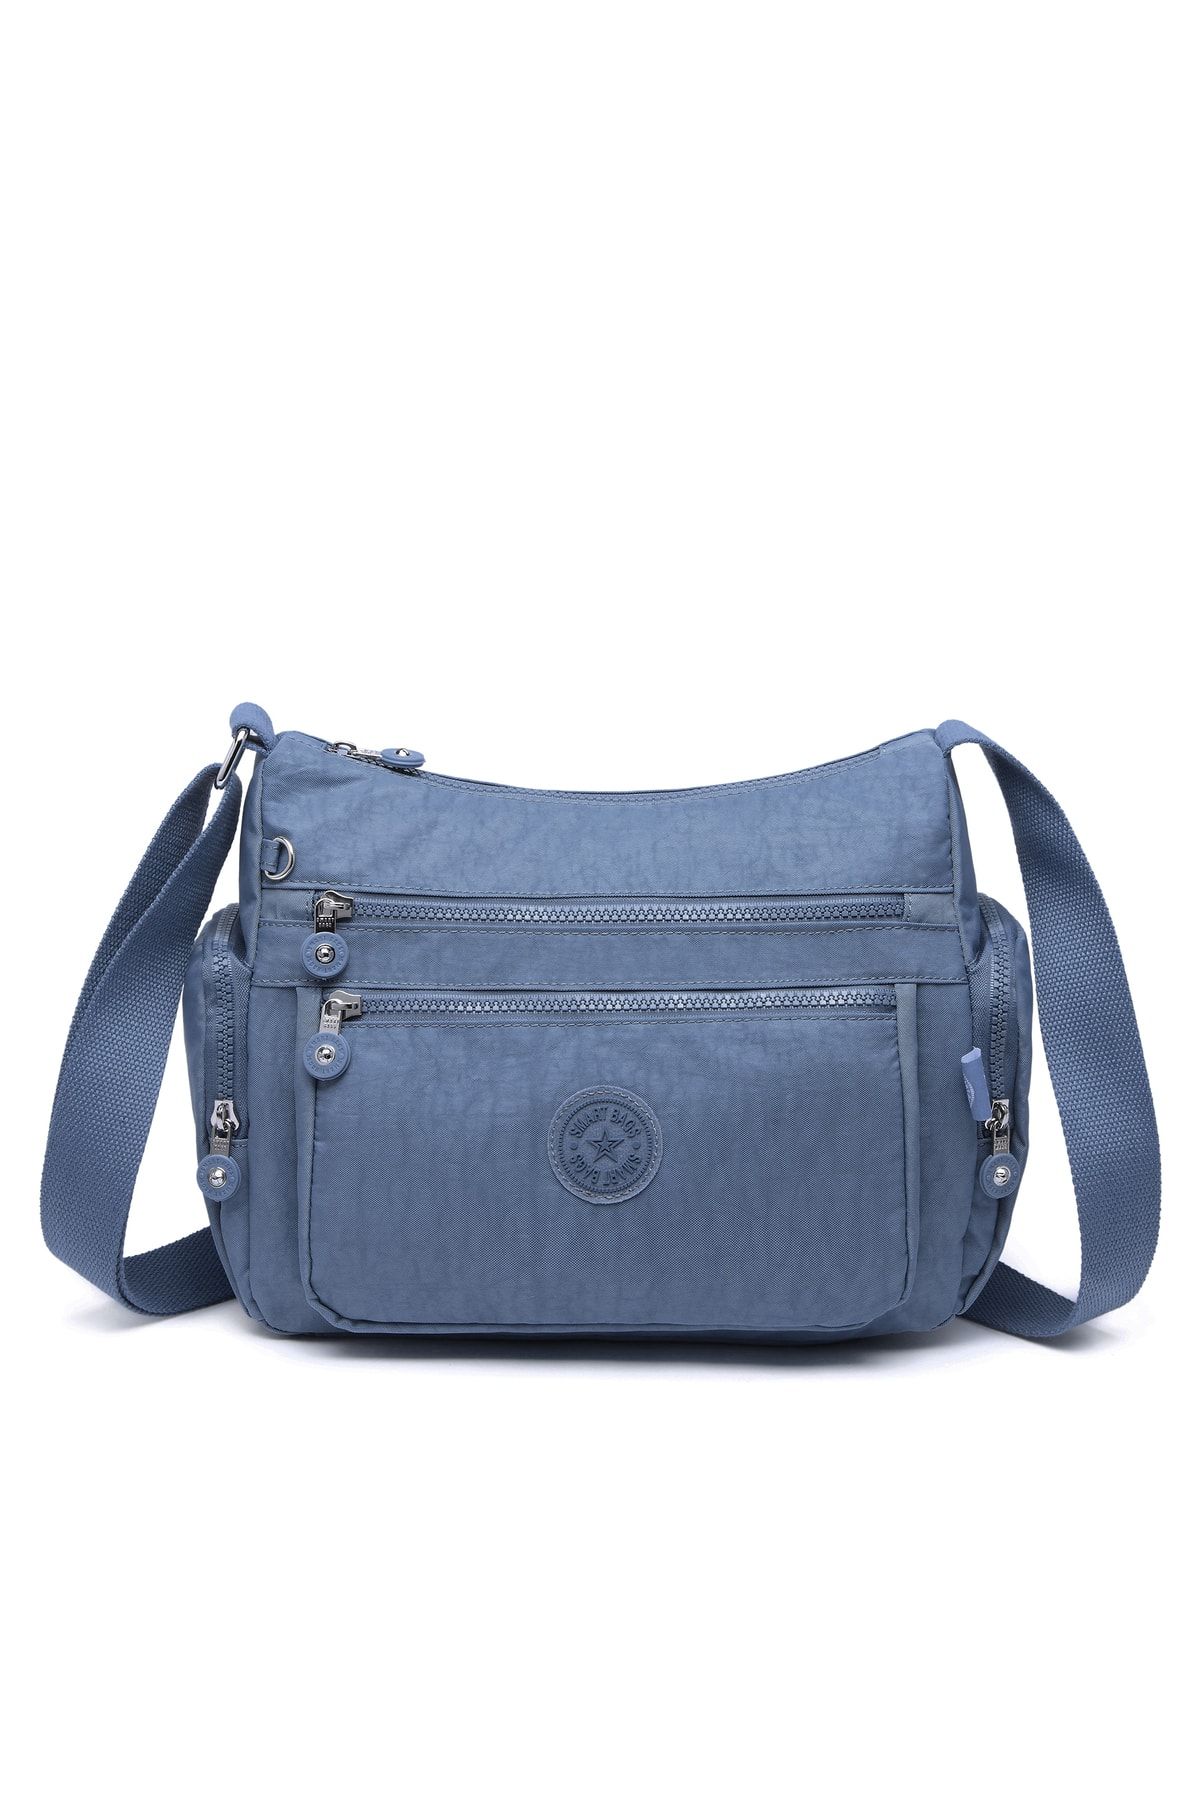 Smart Bags Kadın Postacı Çantası Krinkıl Kumaş 1115 Jeans Mavi